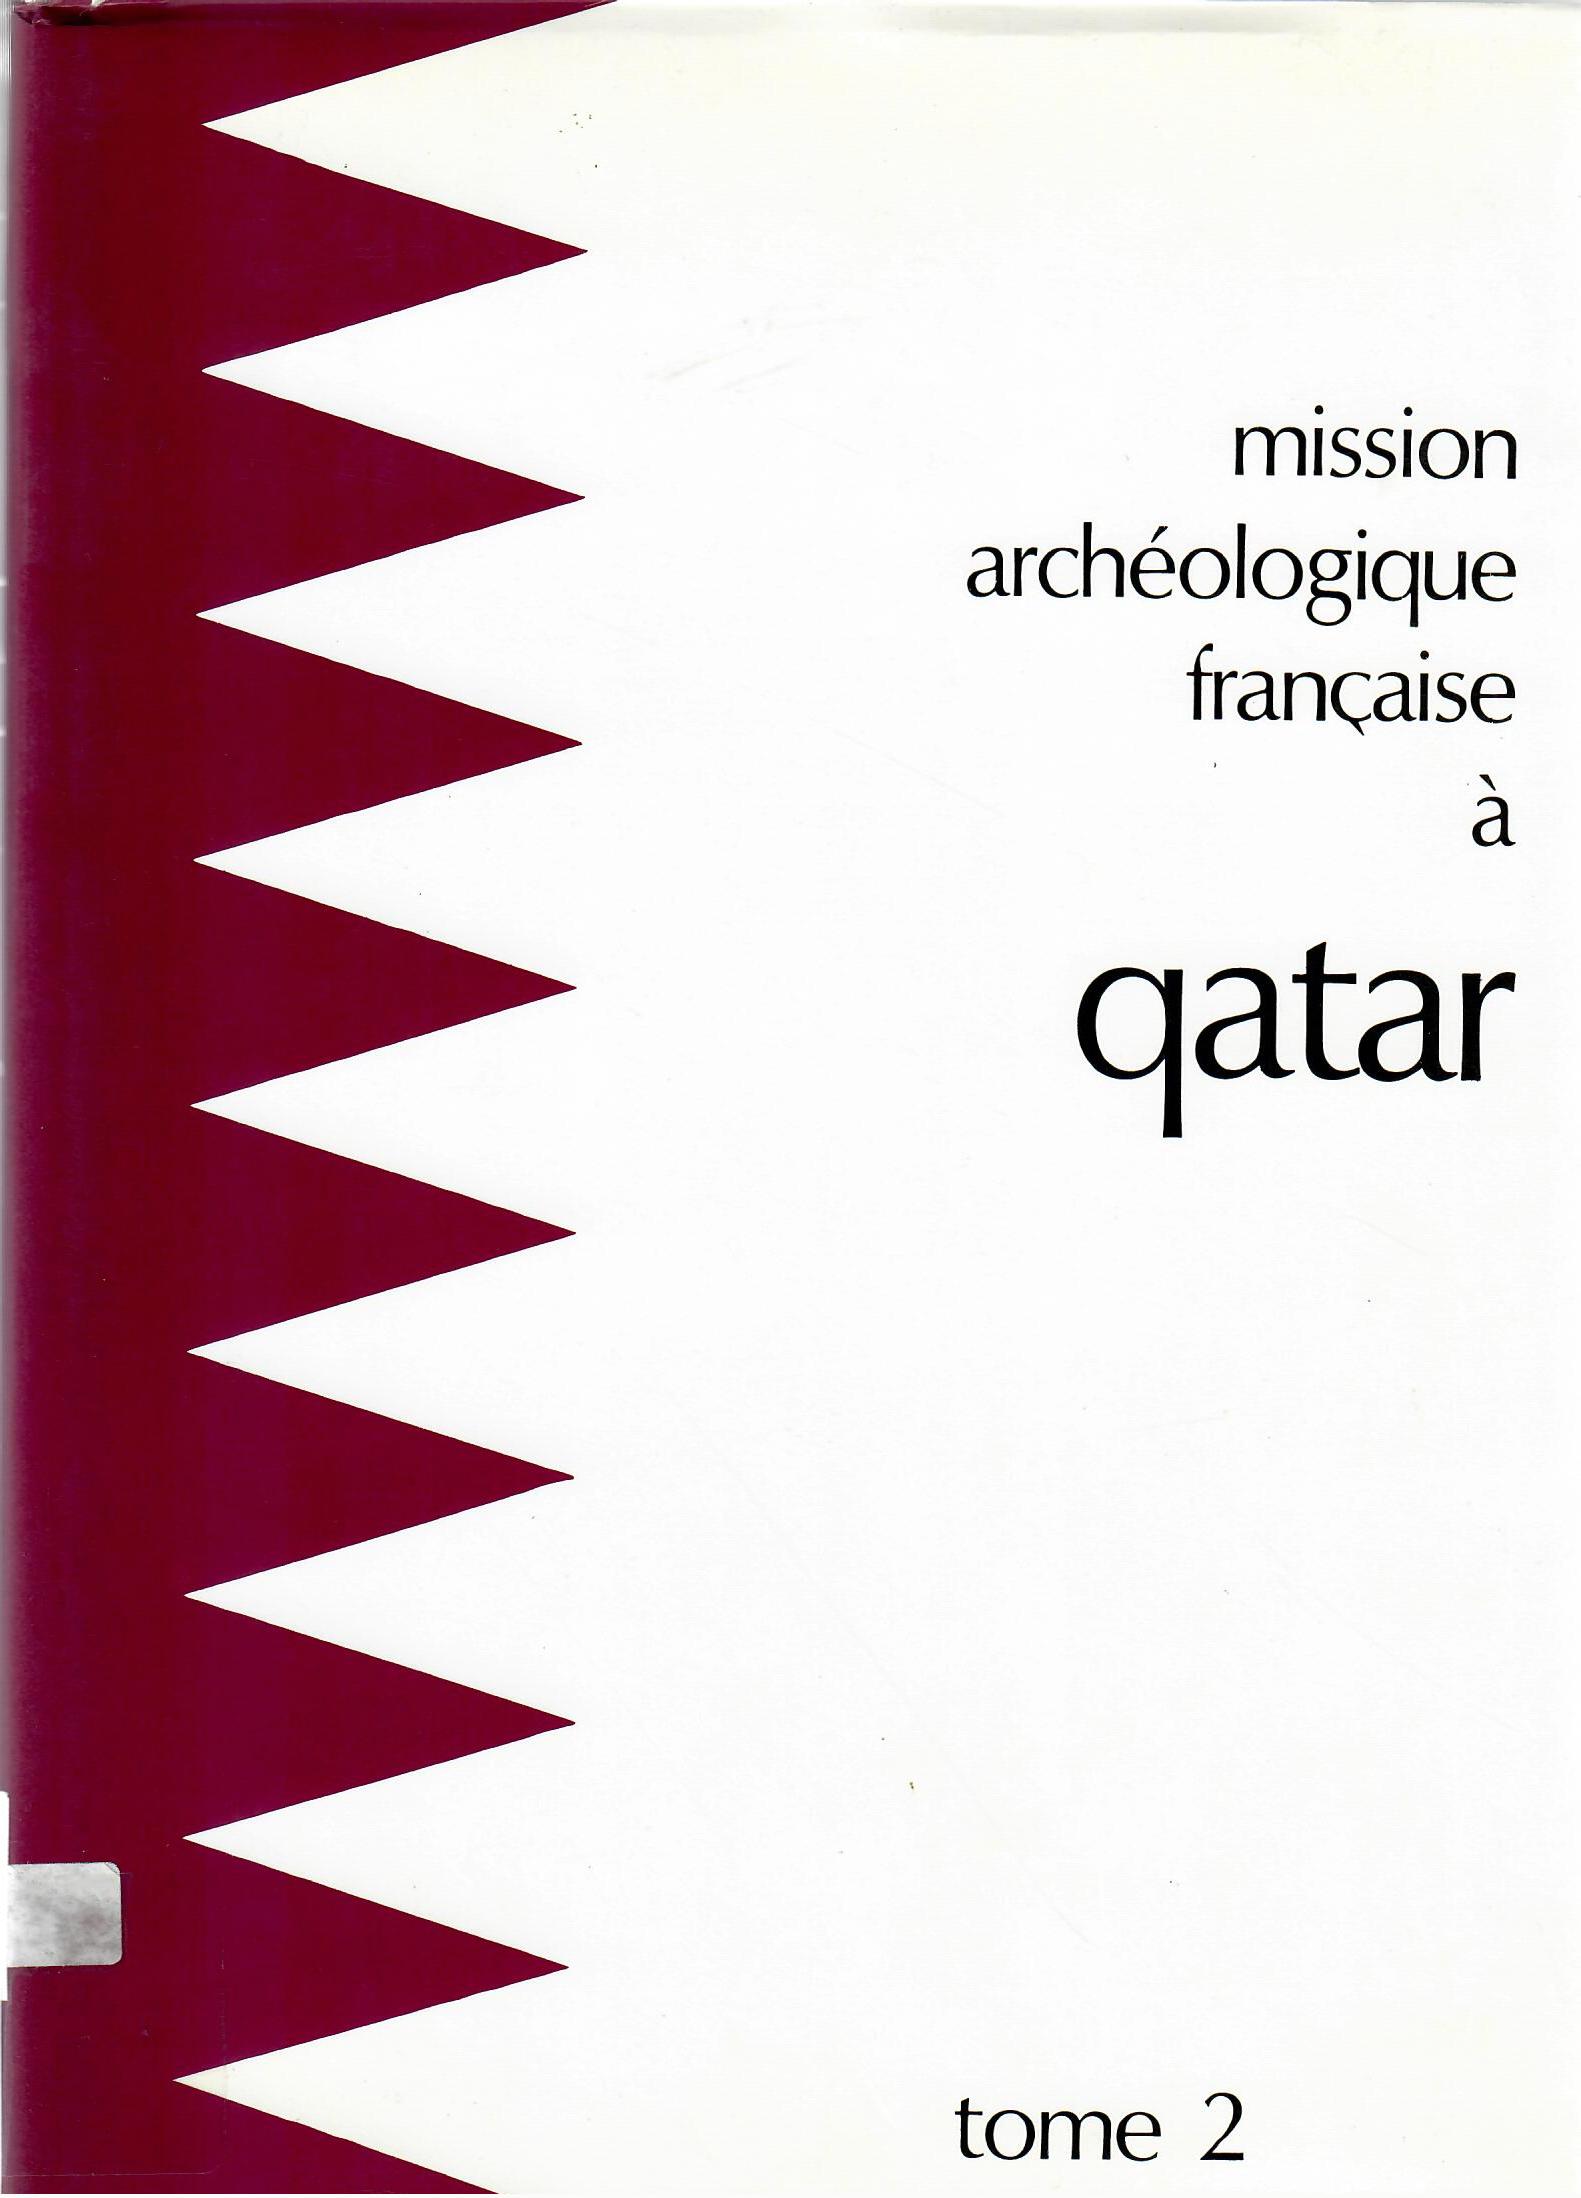 mission archeologique francaise a qatar tome 2